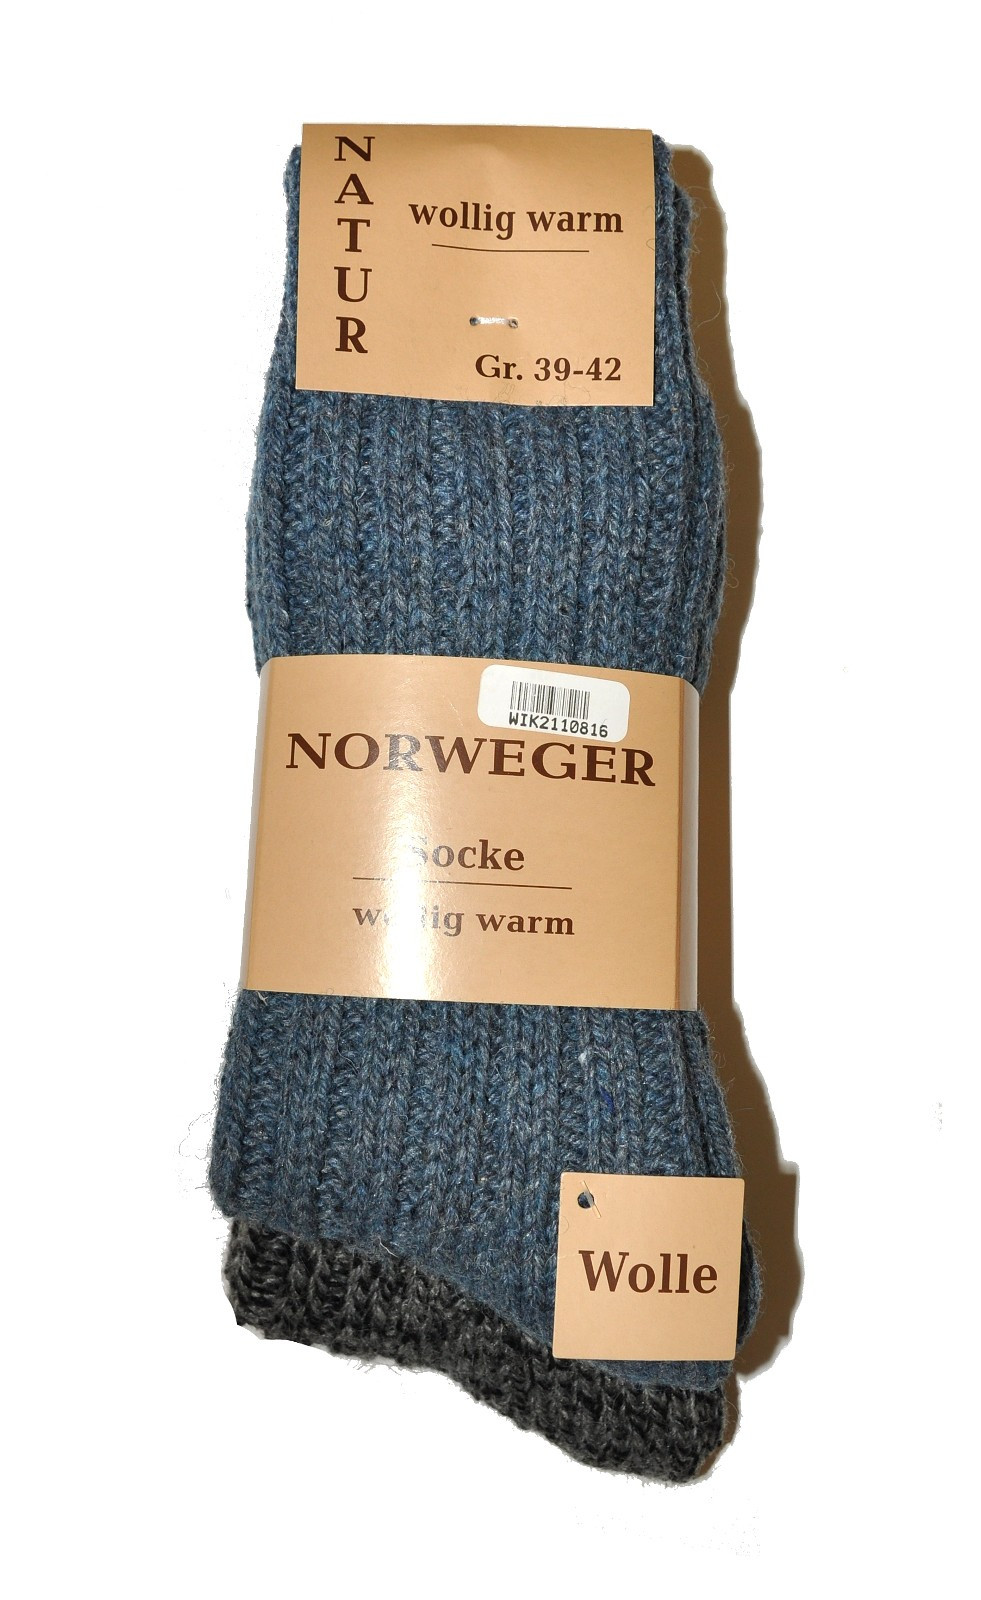 Levně Pánské ponožky WiK art.21108 Norweger Socke A'2 modrozelená 39-42